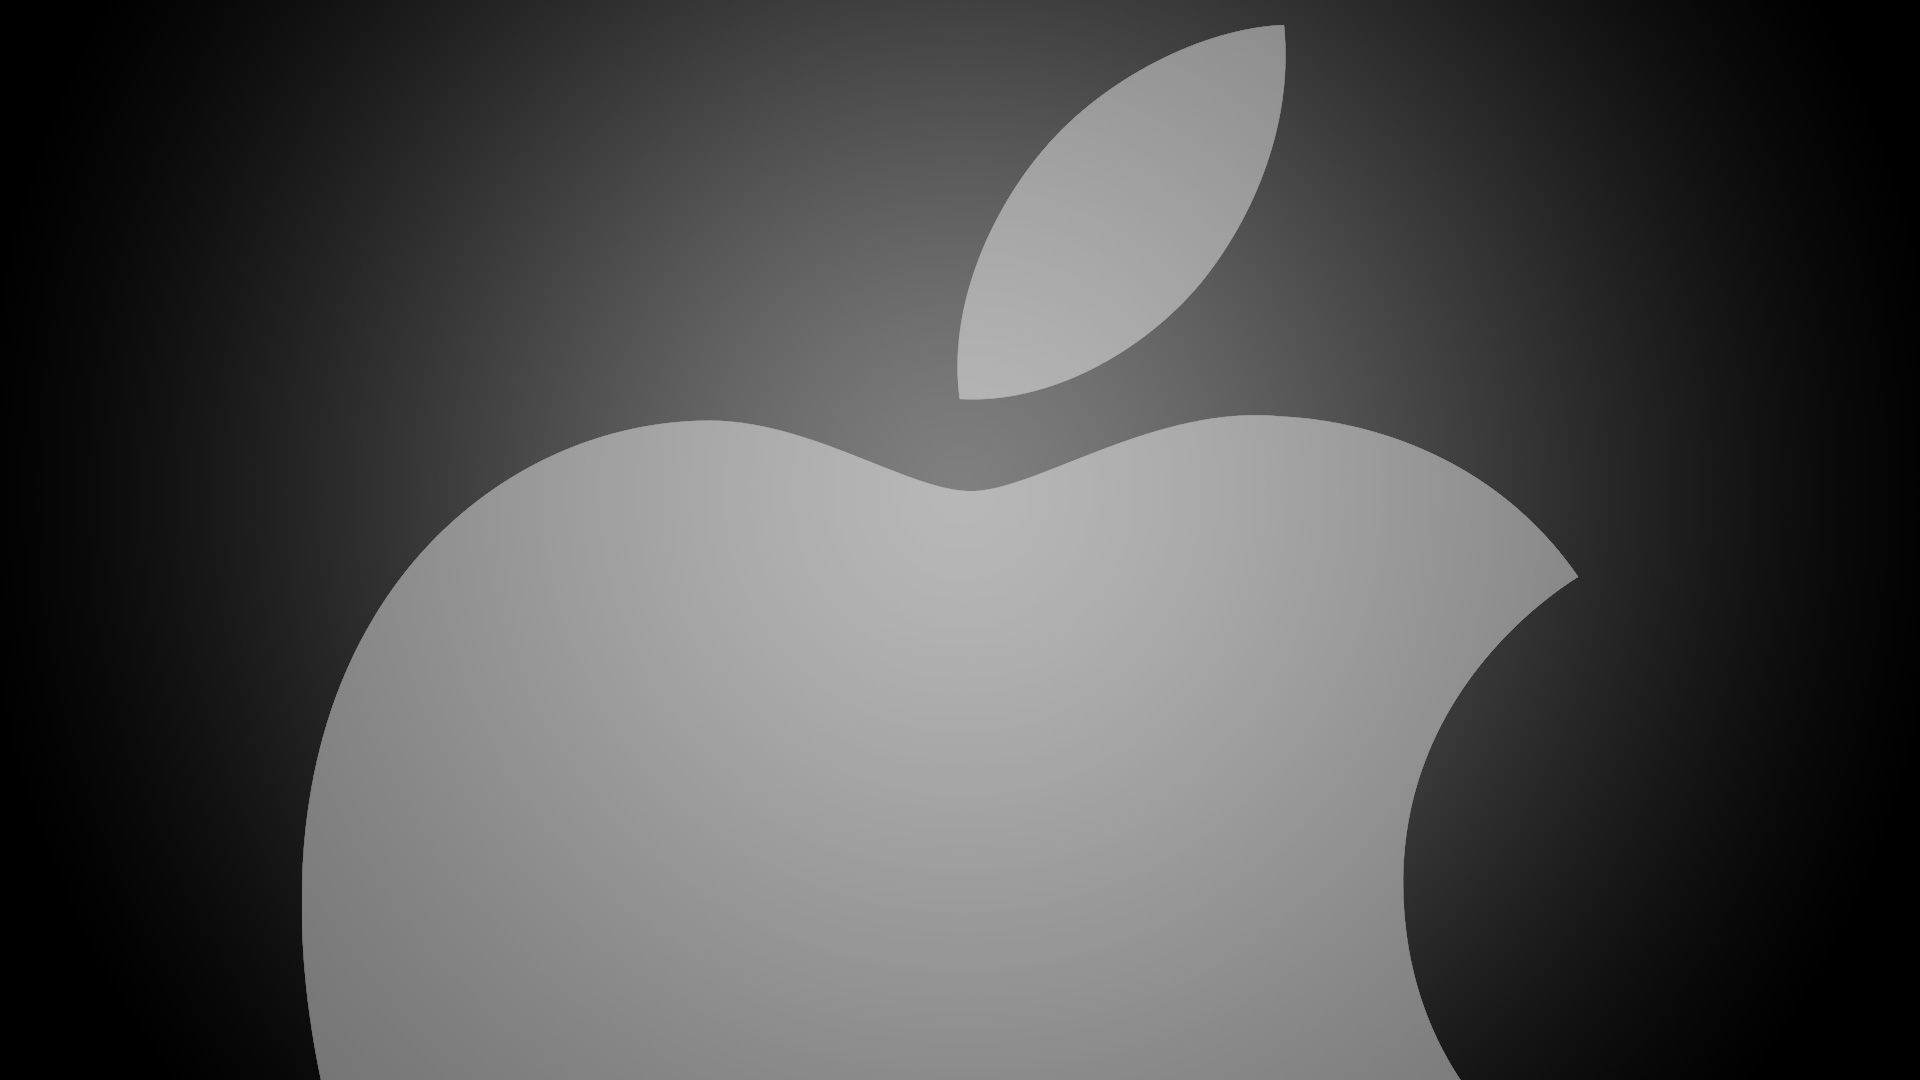 Apple возглавила список лучших брендов Interbrand девятый год подряд